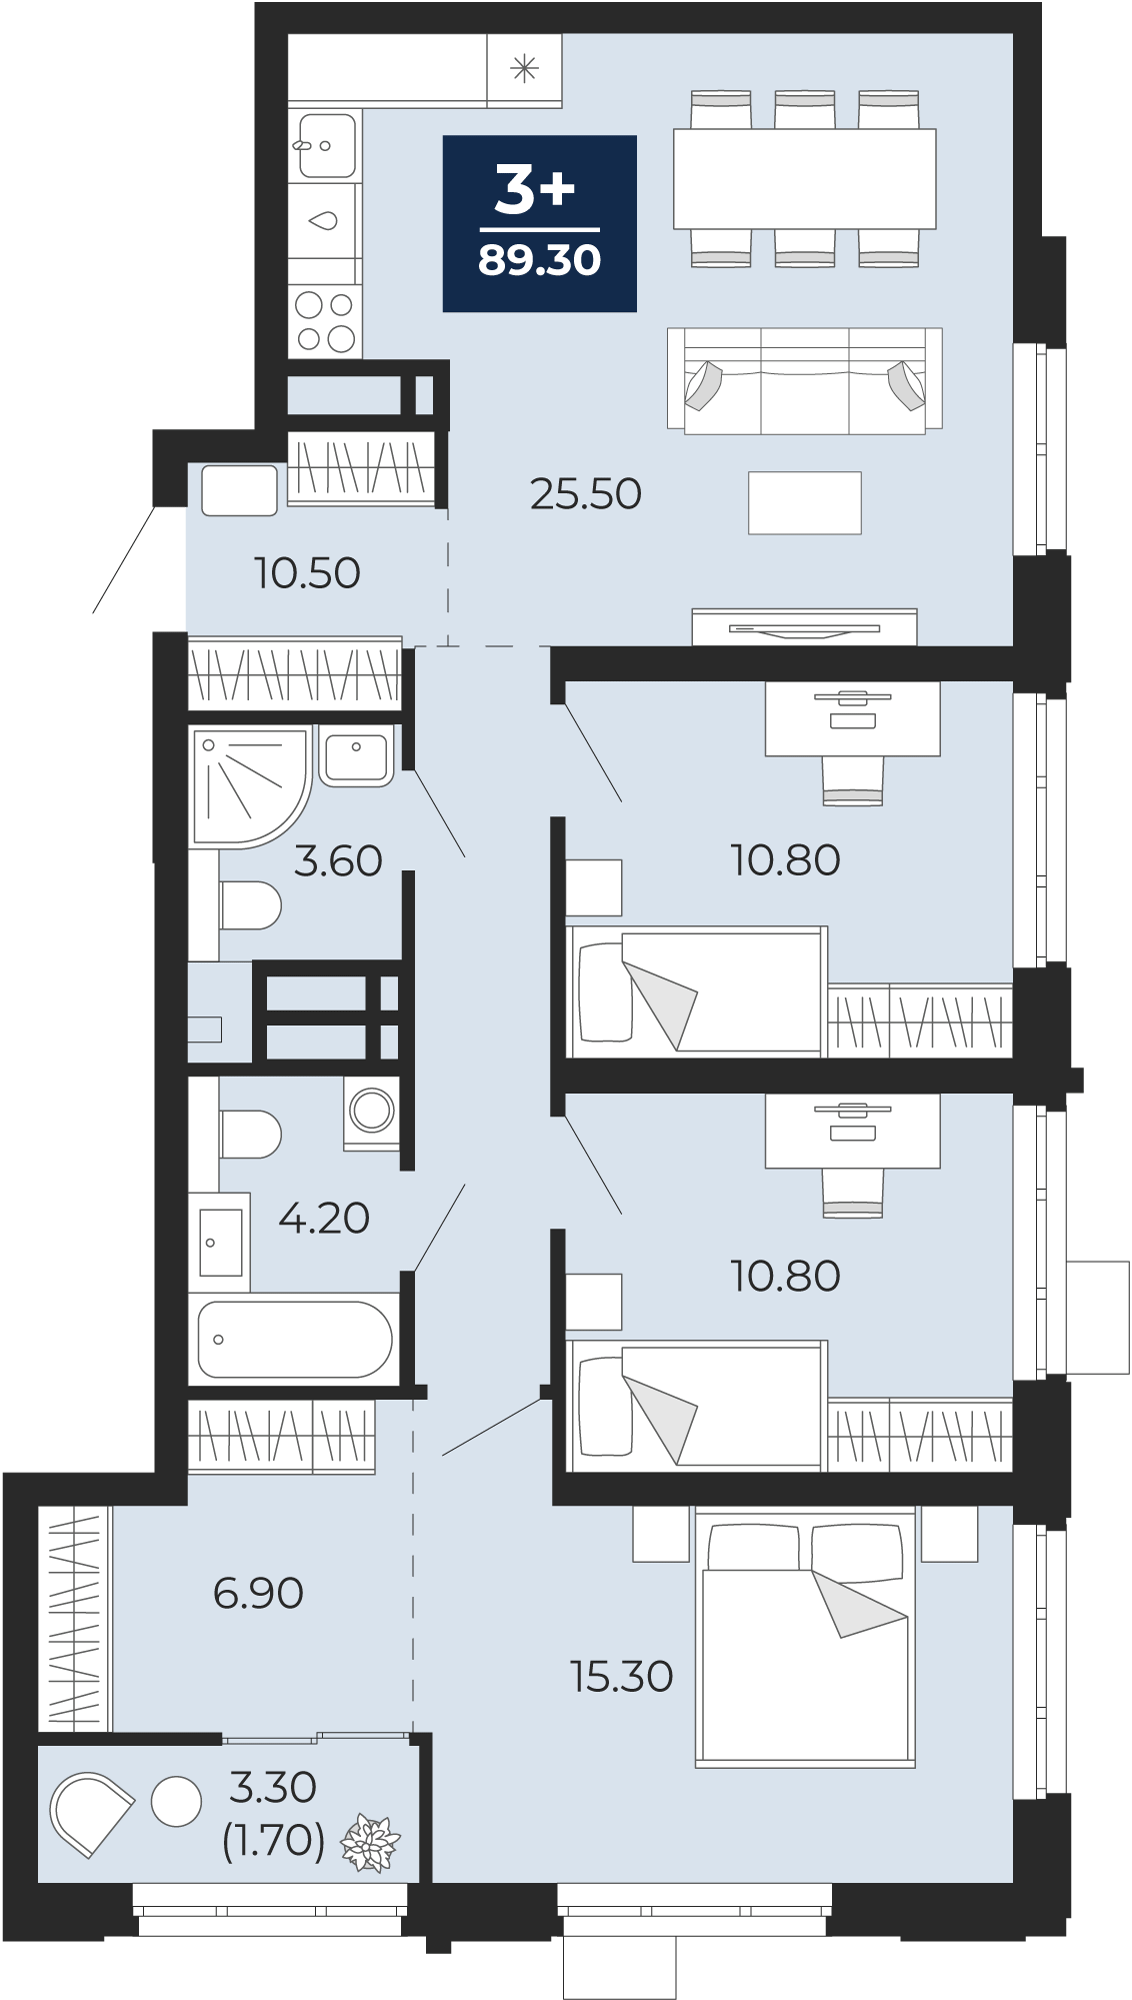 Квартира № 138, 3-комнатная, 89.3 кв. м, 8 этаж